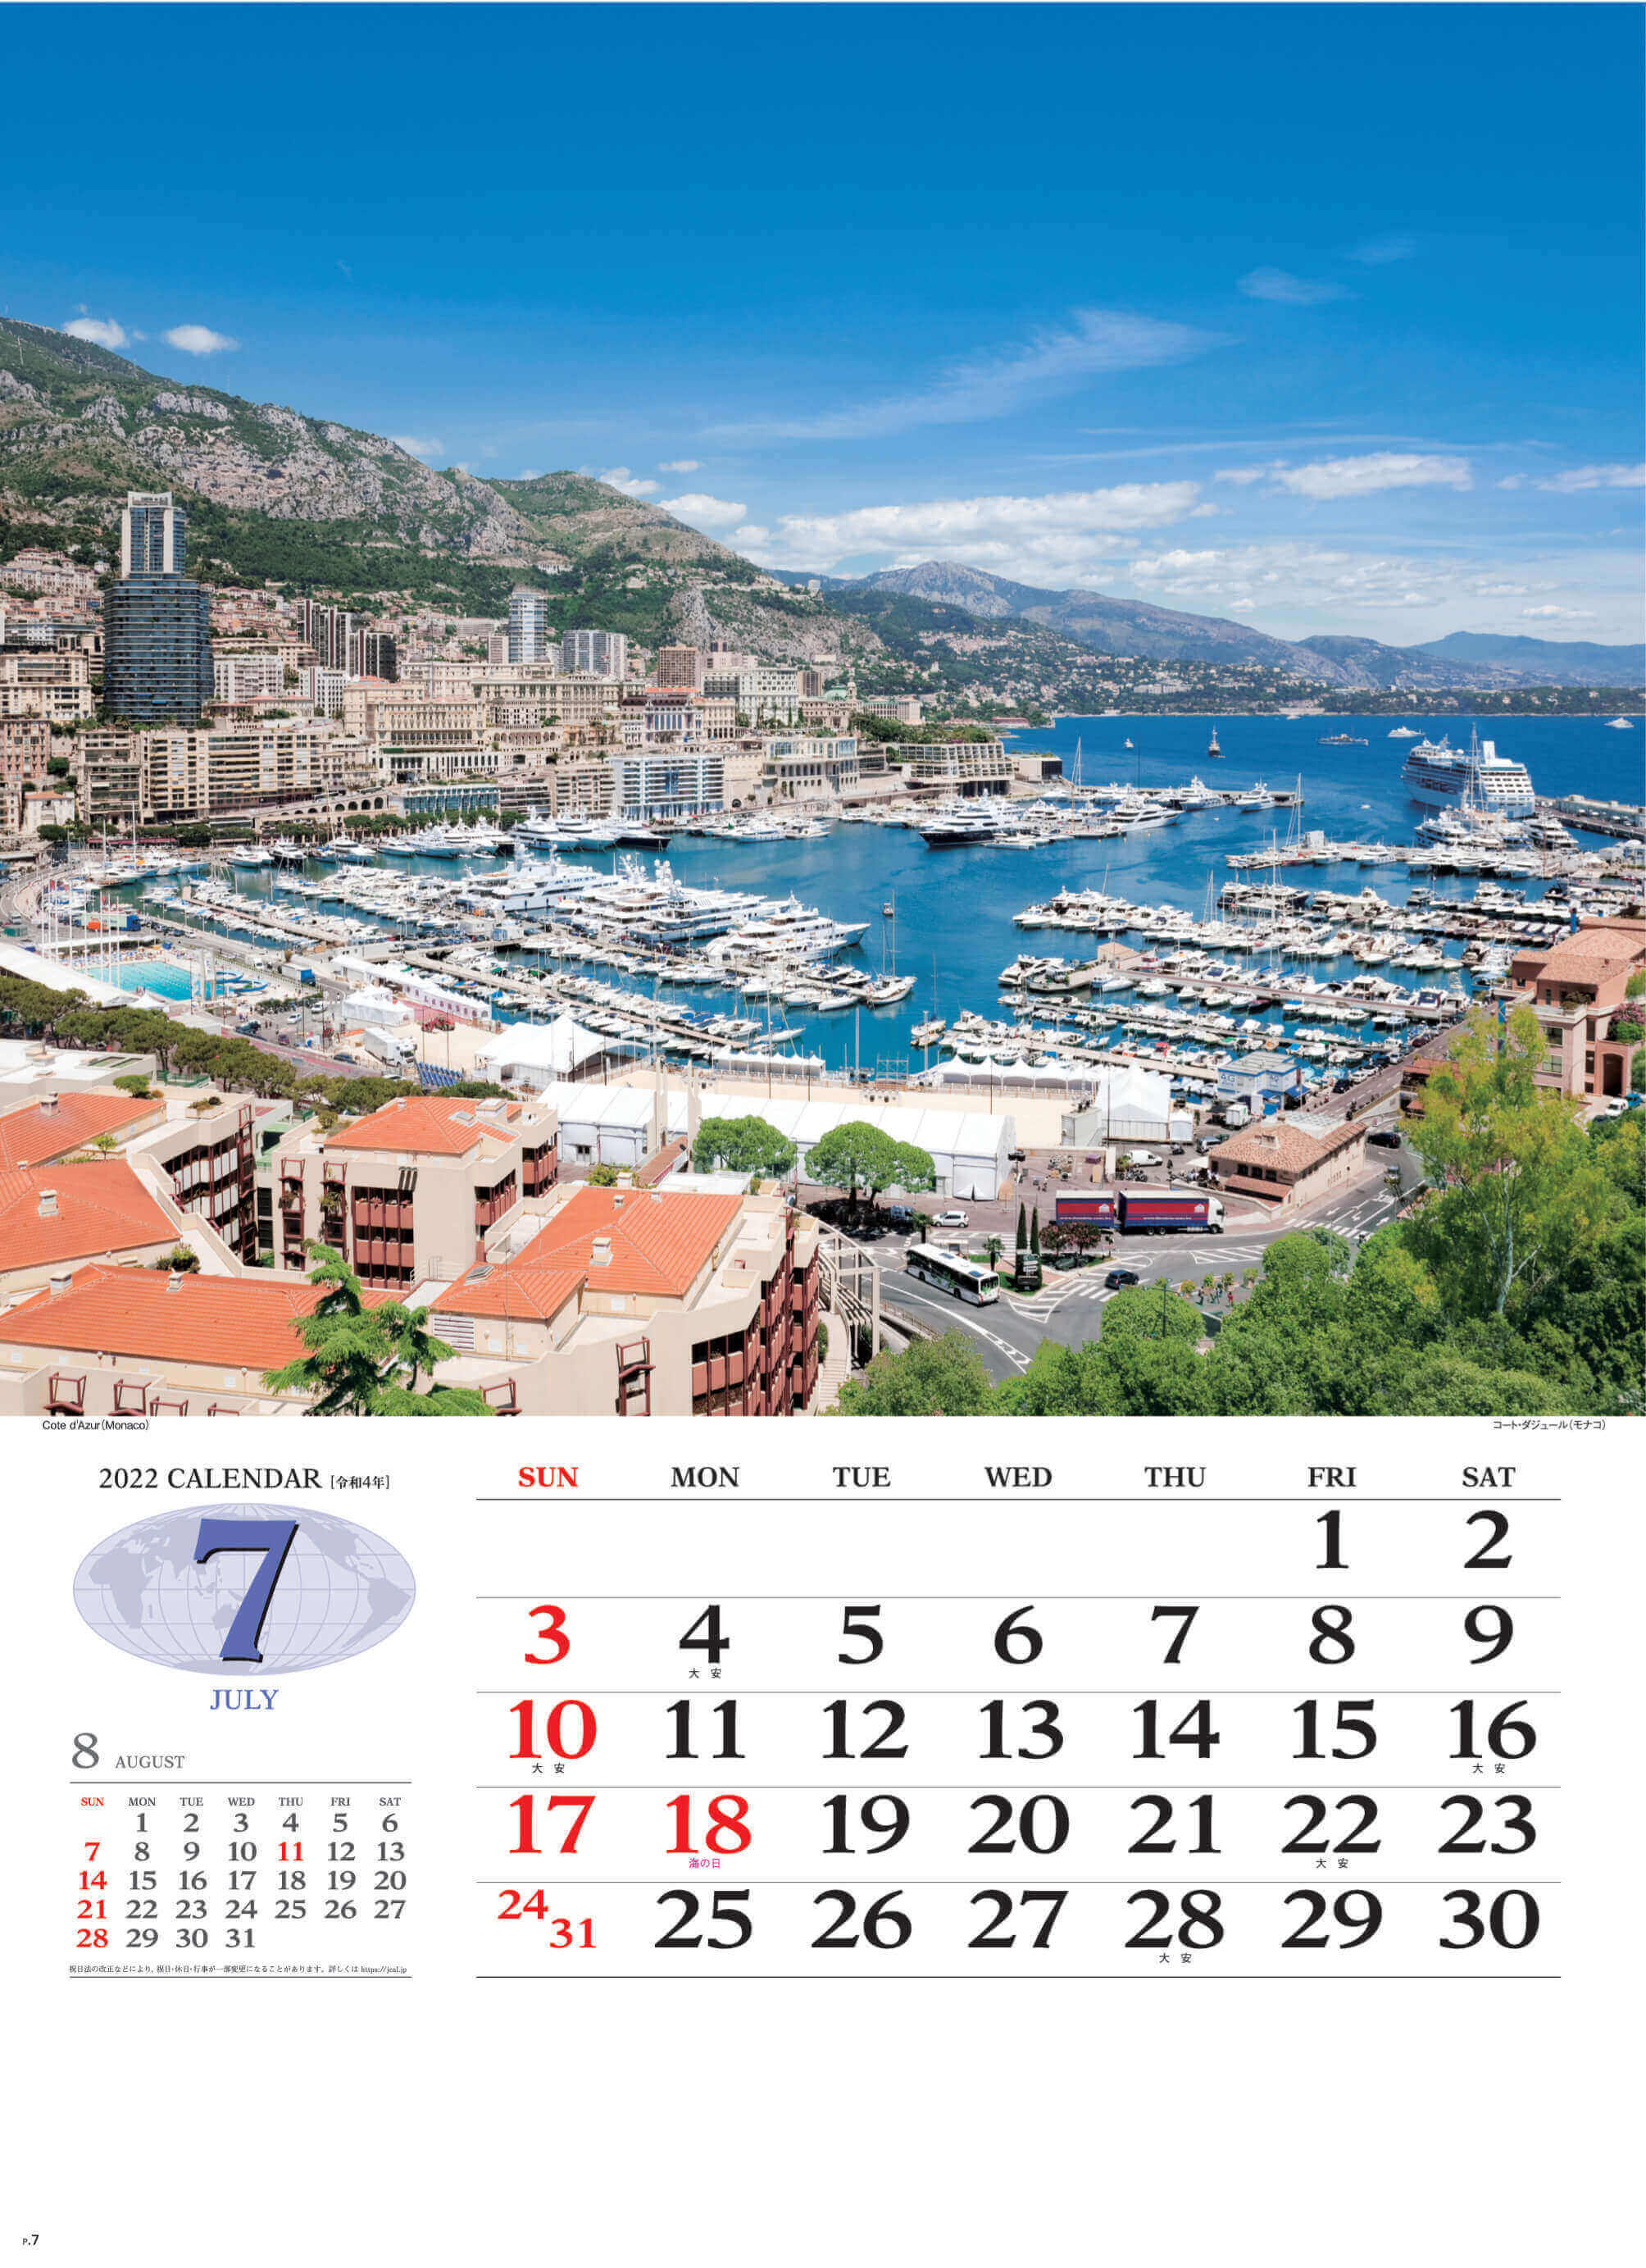 7月 コート・ダジュール モナコ 世界の景観 2022年カレンダーの画像